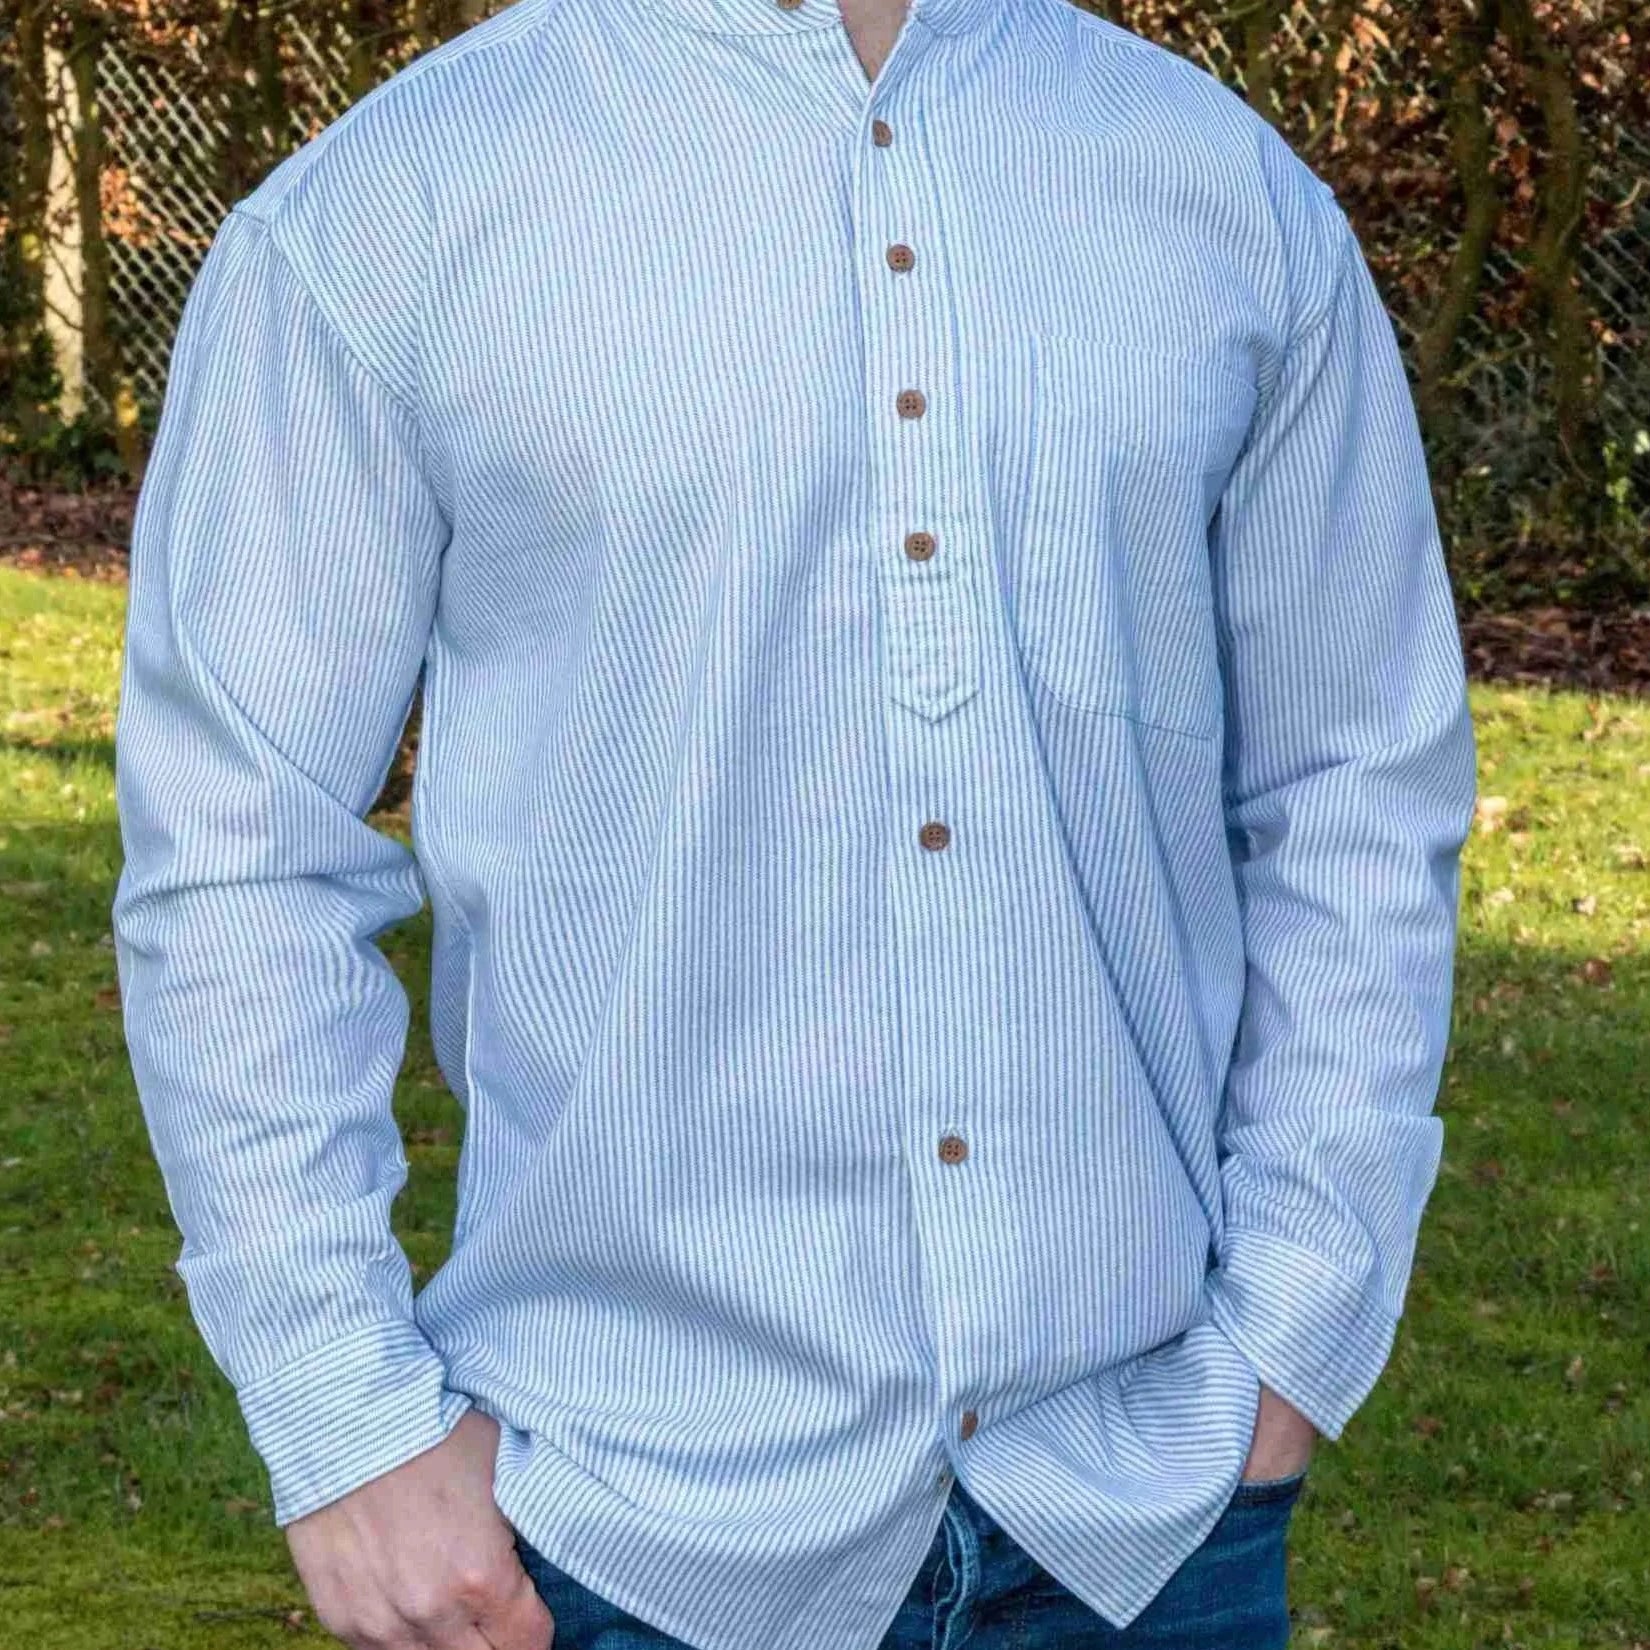 White Irish Grandfather Shirt with blue Cross-Hatching